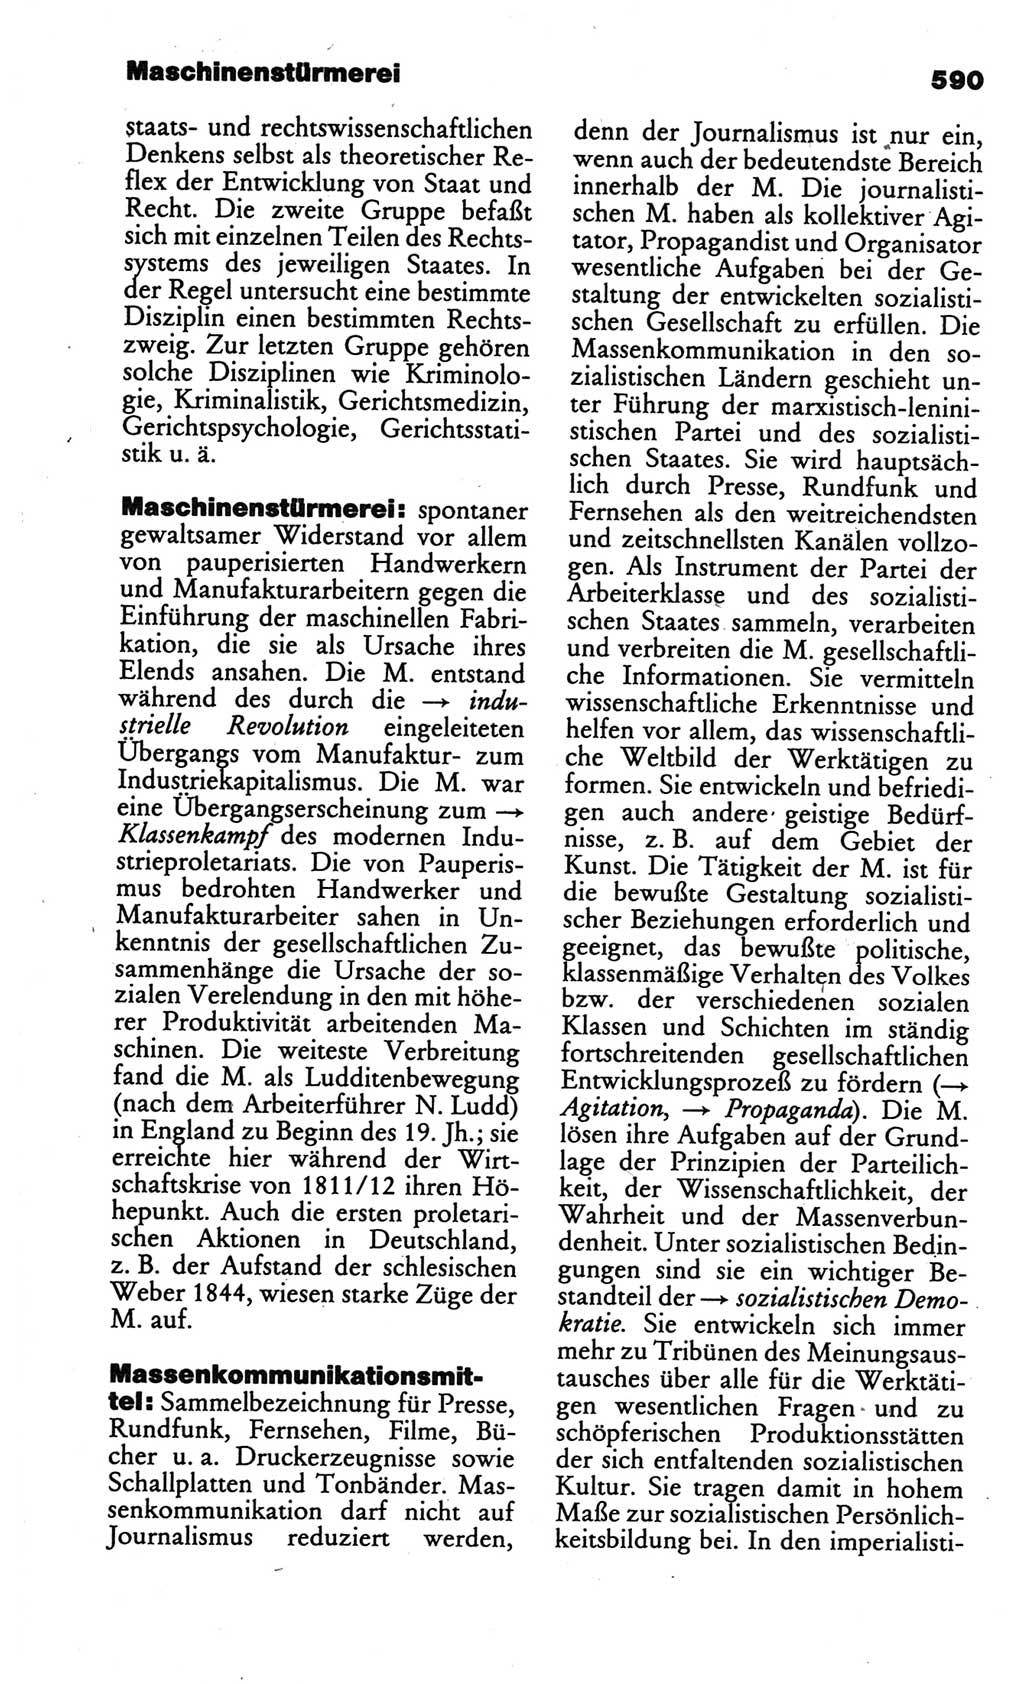 Kleines politisches Wörterbuch [Deutsche Demokratische Republik (DDR)] 1986, Seite 590 (Kl. pol. Wb. DDR 1986, S. 590)